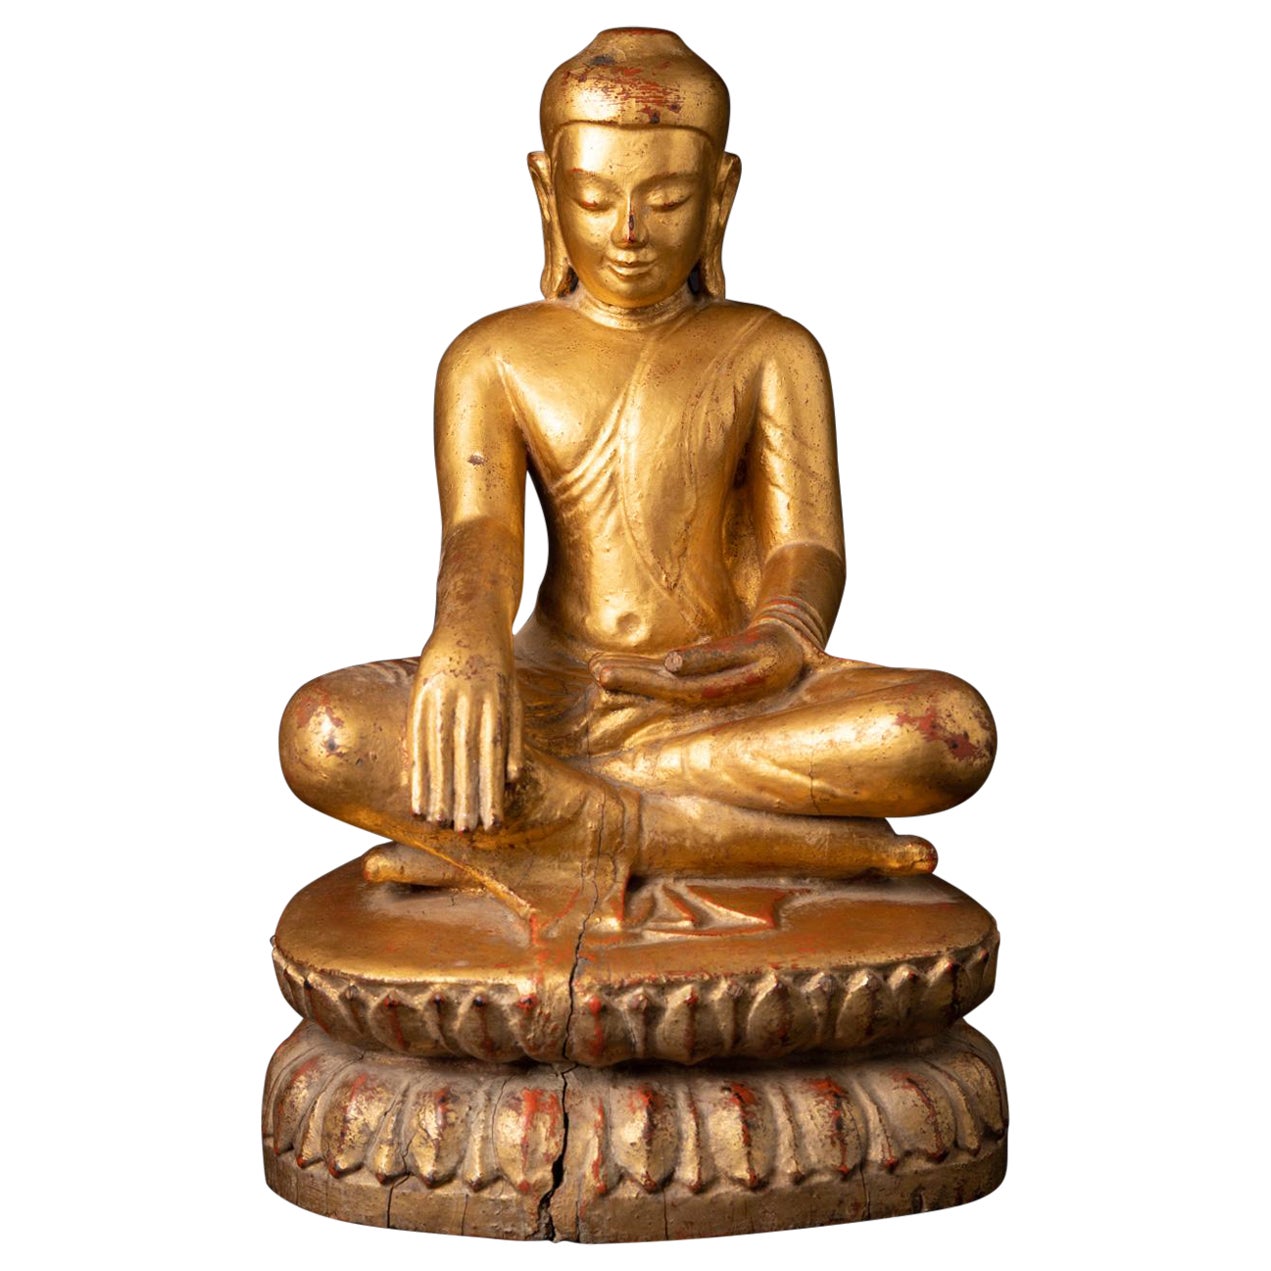 Besondere antike burmesische Buddha-Statue aus Holz in Bhumisparsha Mudra aus dem 17. Jahrhundert